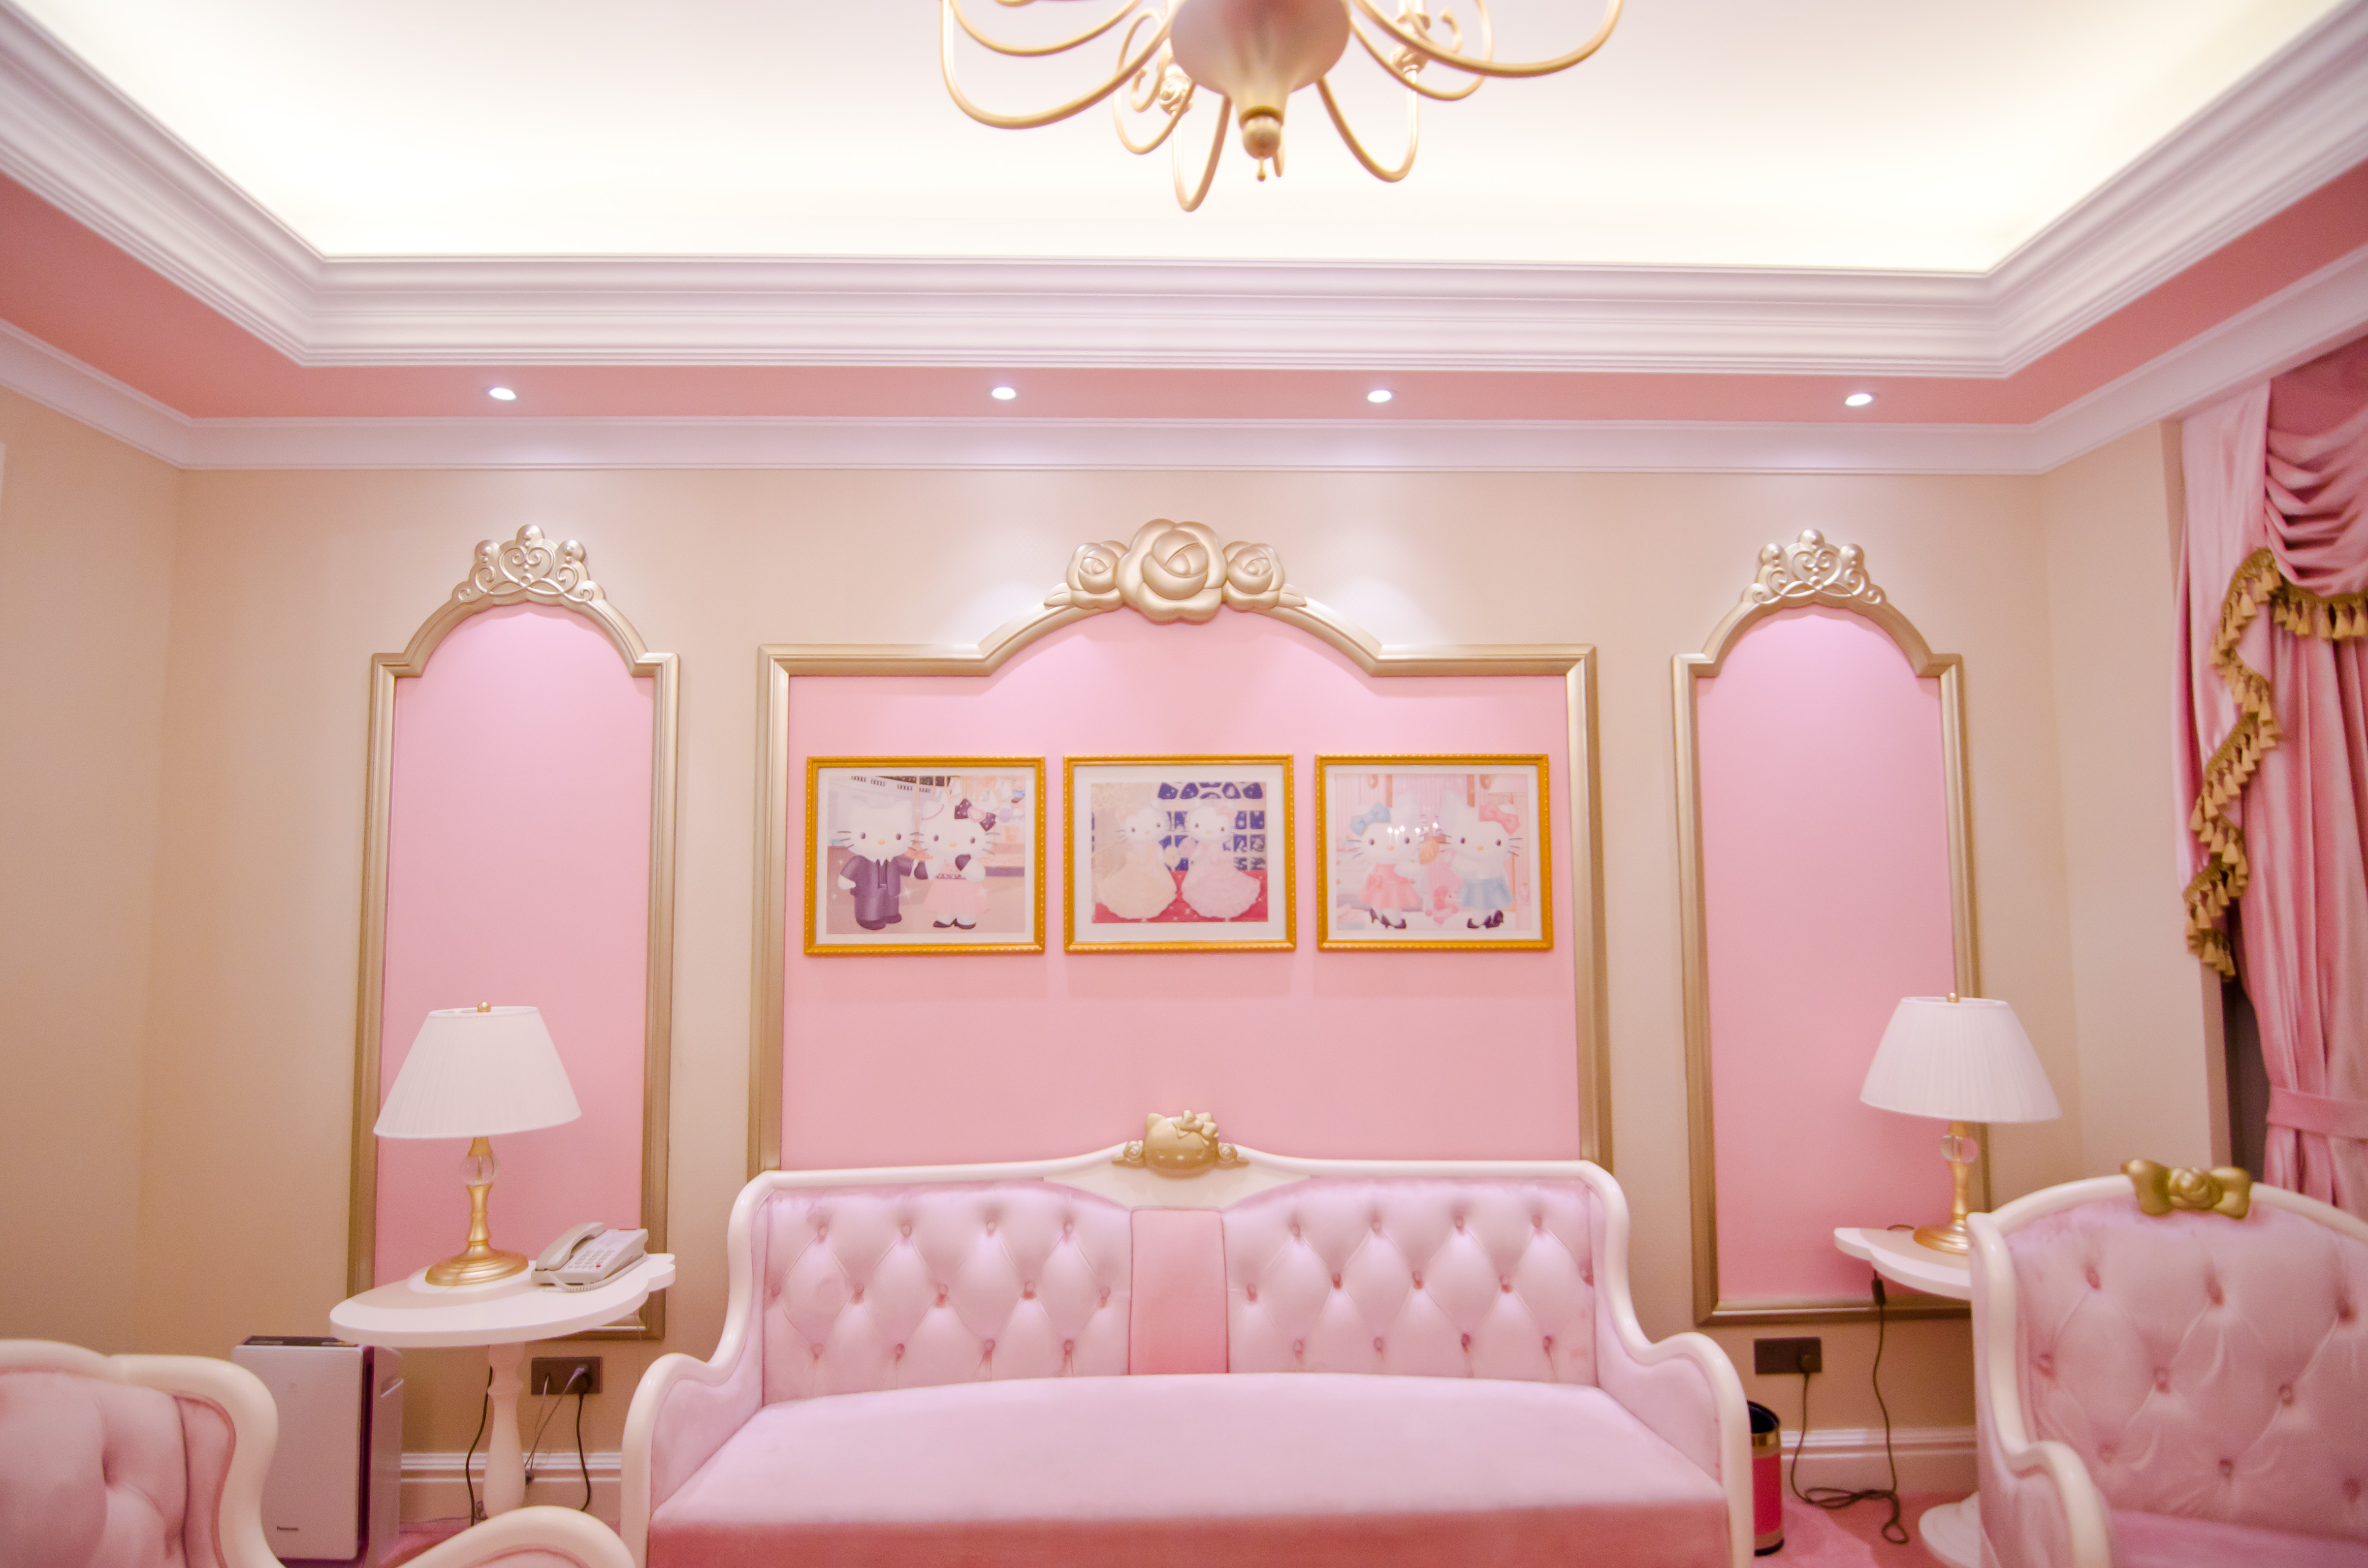 锦江城堡酒店,这里有一段粉红的记忆